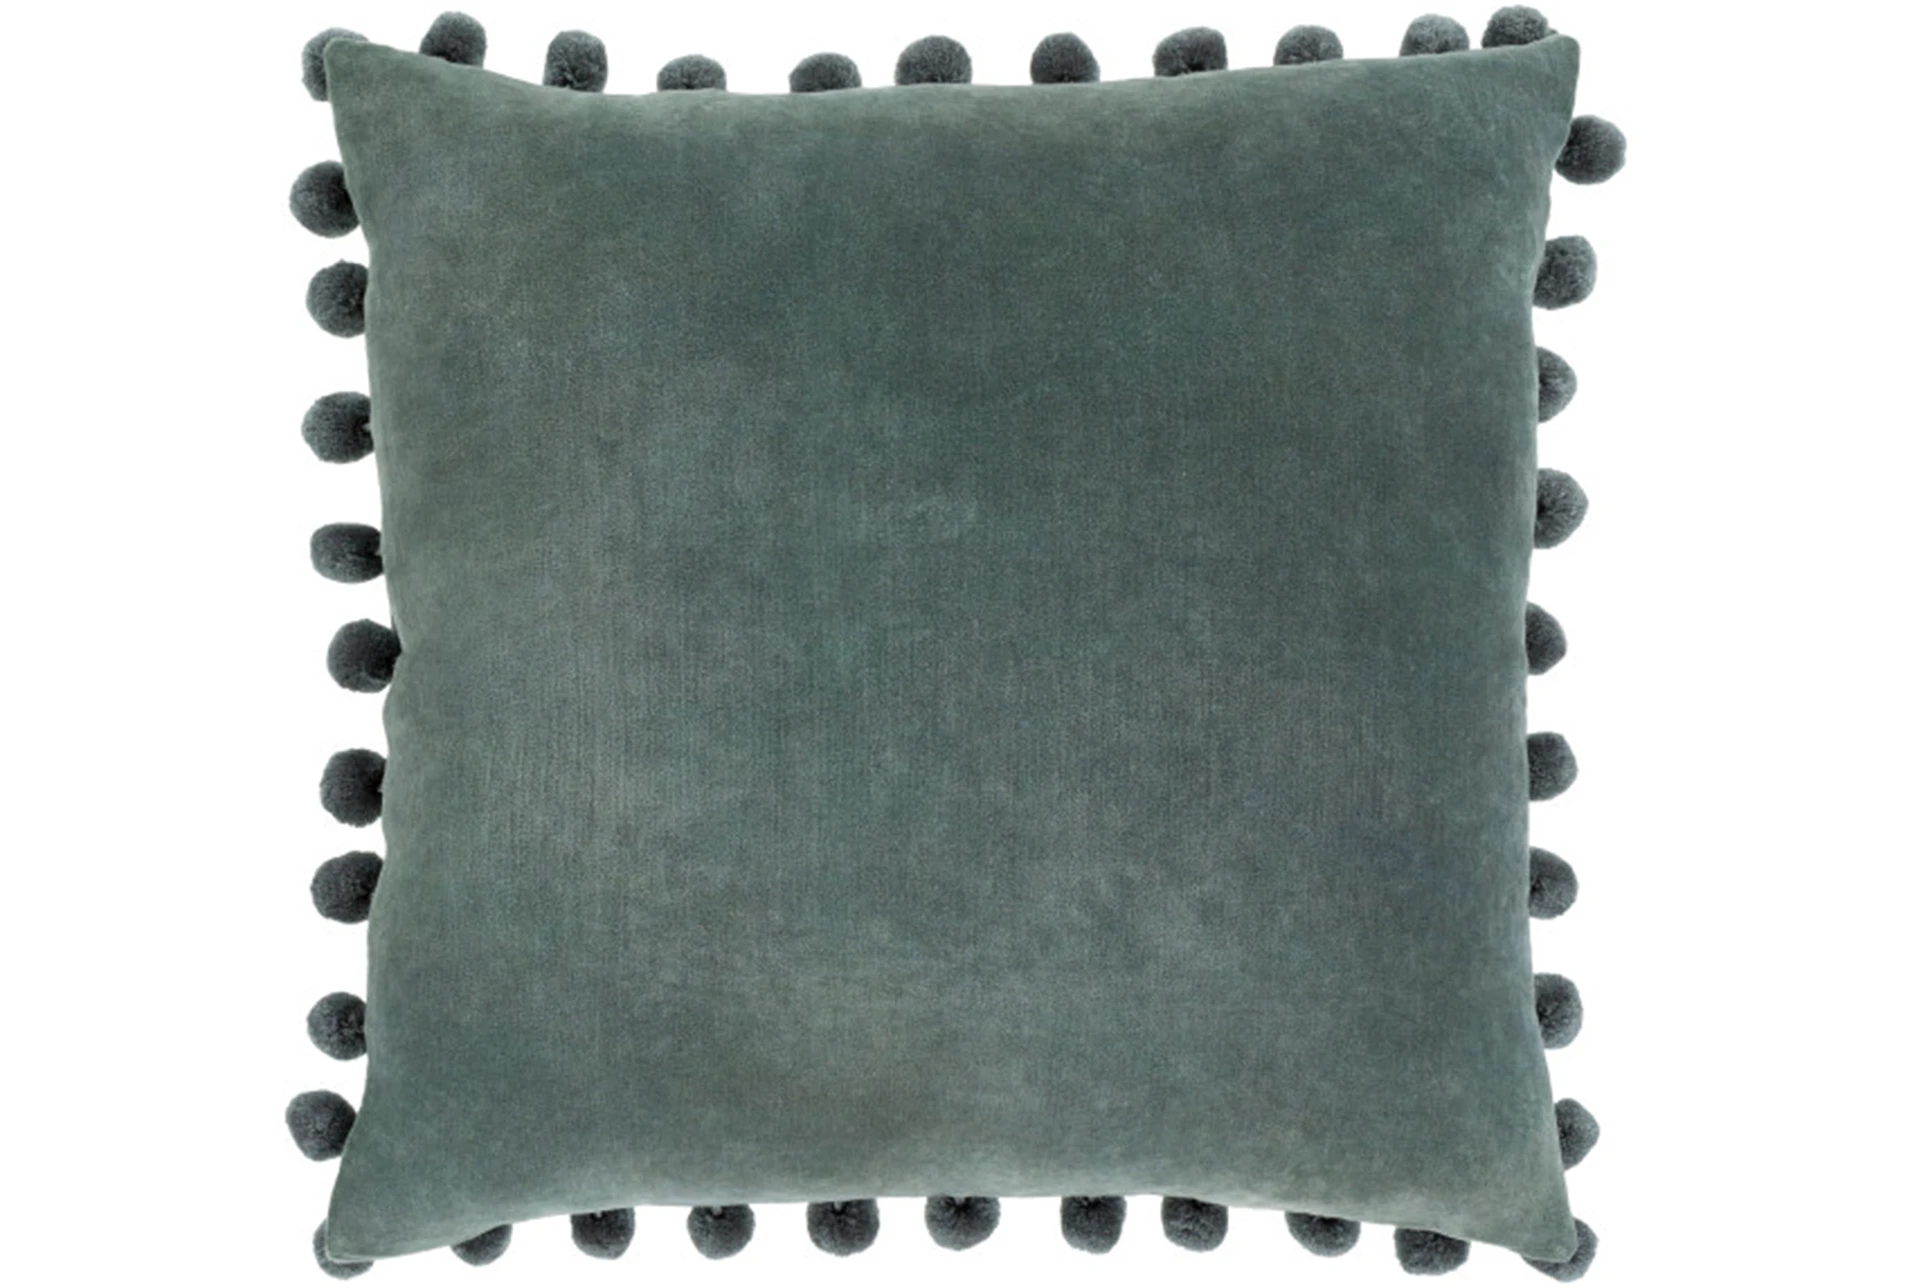 Markér Nedgang Rekvisitter Accent Pillow-Cotton Velvet Pom Poms Green 20X20 | Living Spaces